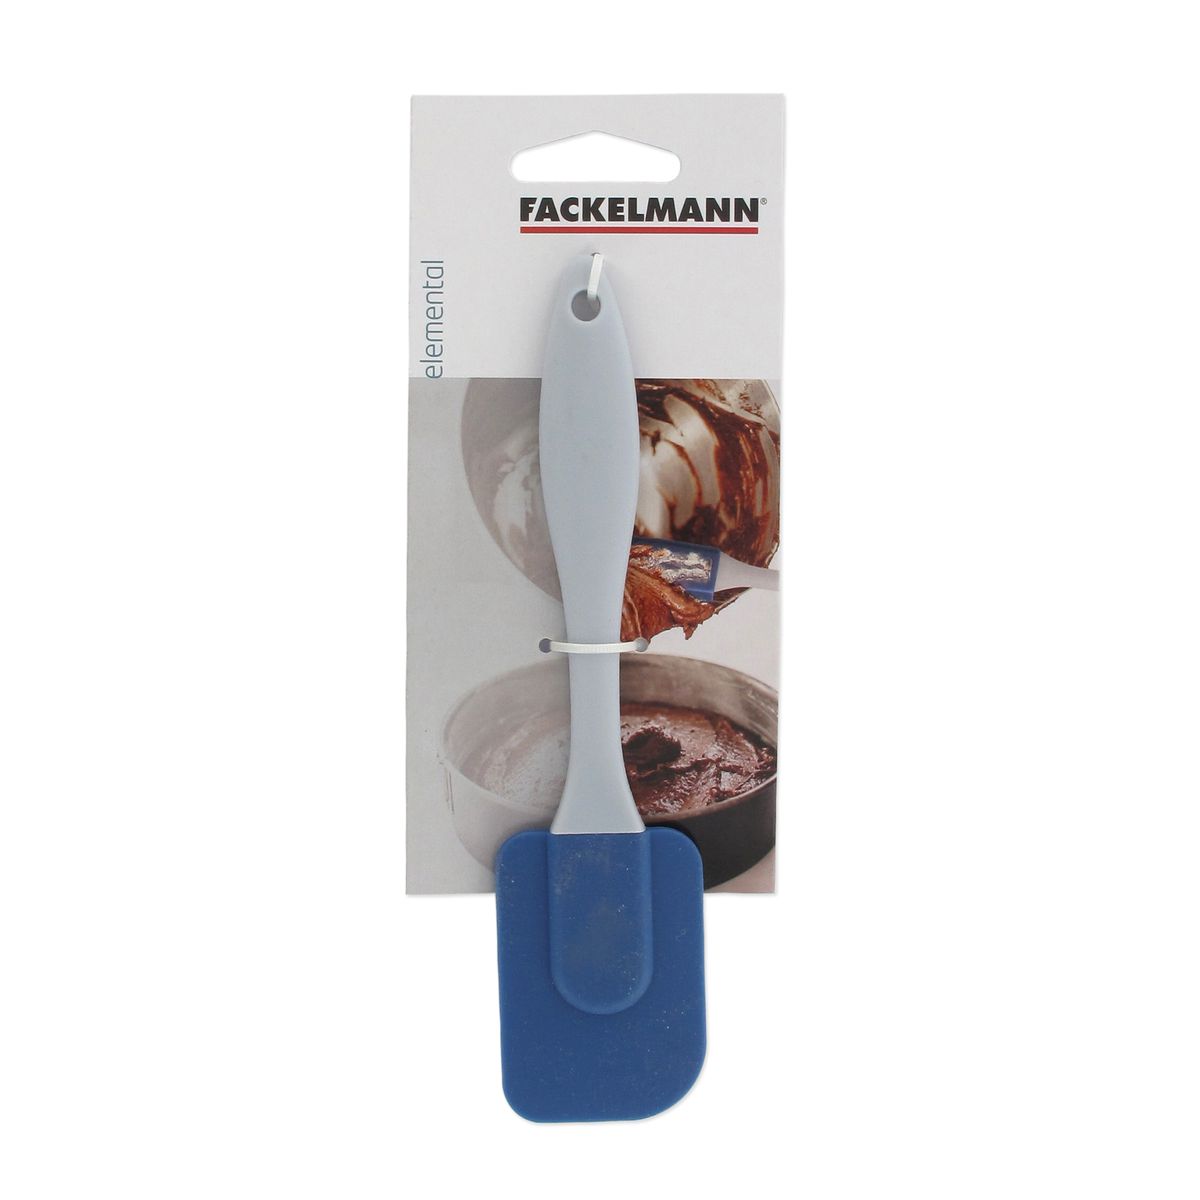 Mini spatule à pâtisserie largeur 45 mm en silicone 19 cm Fackelmann Elemental